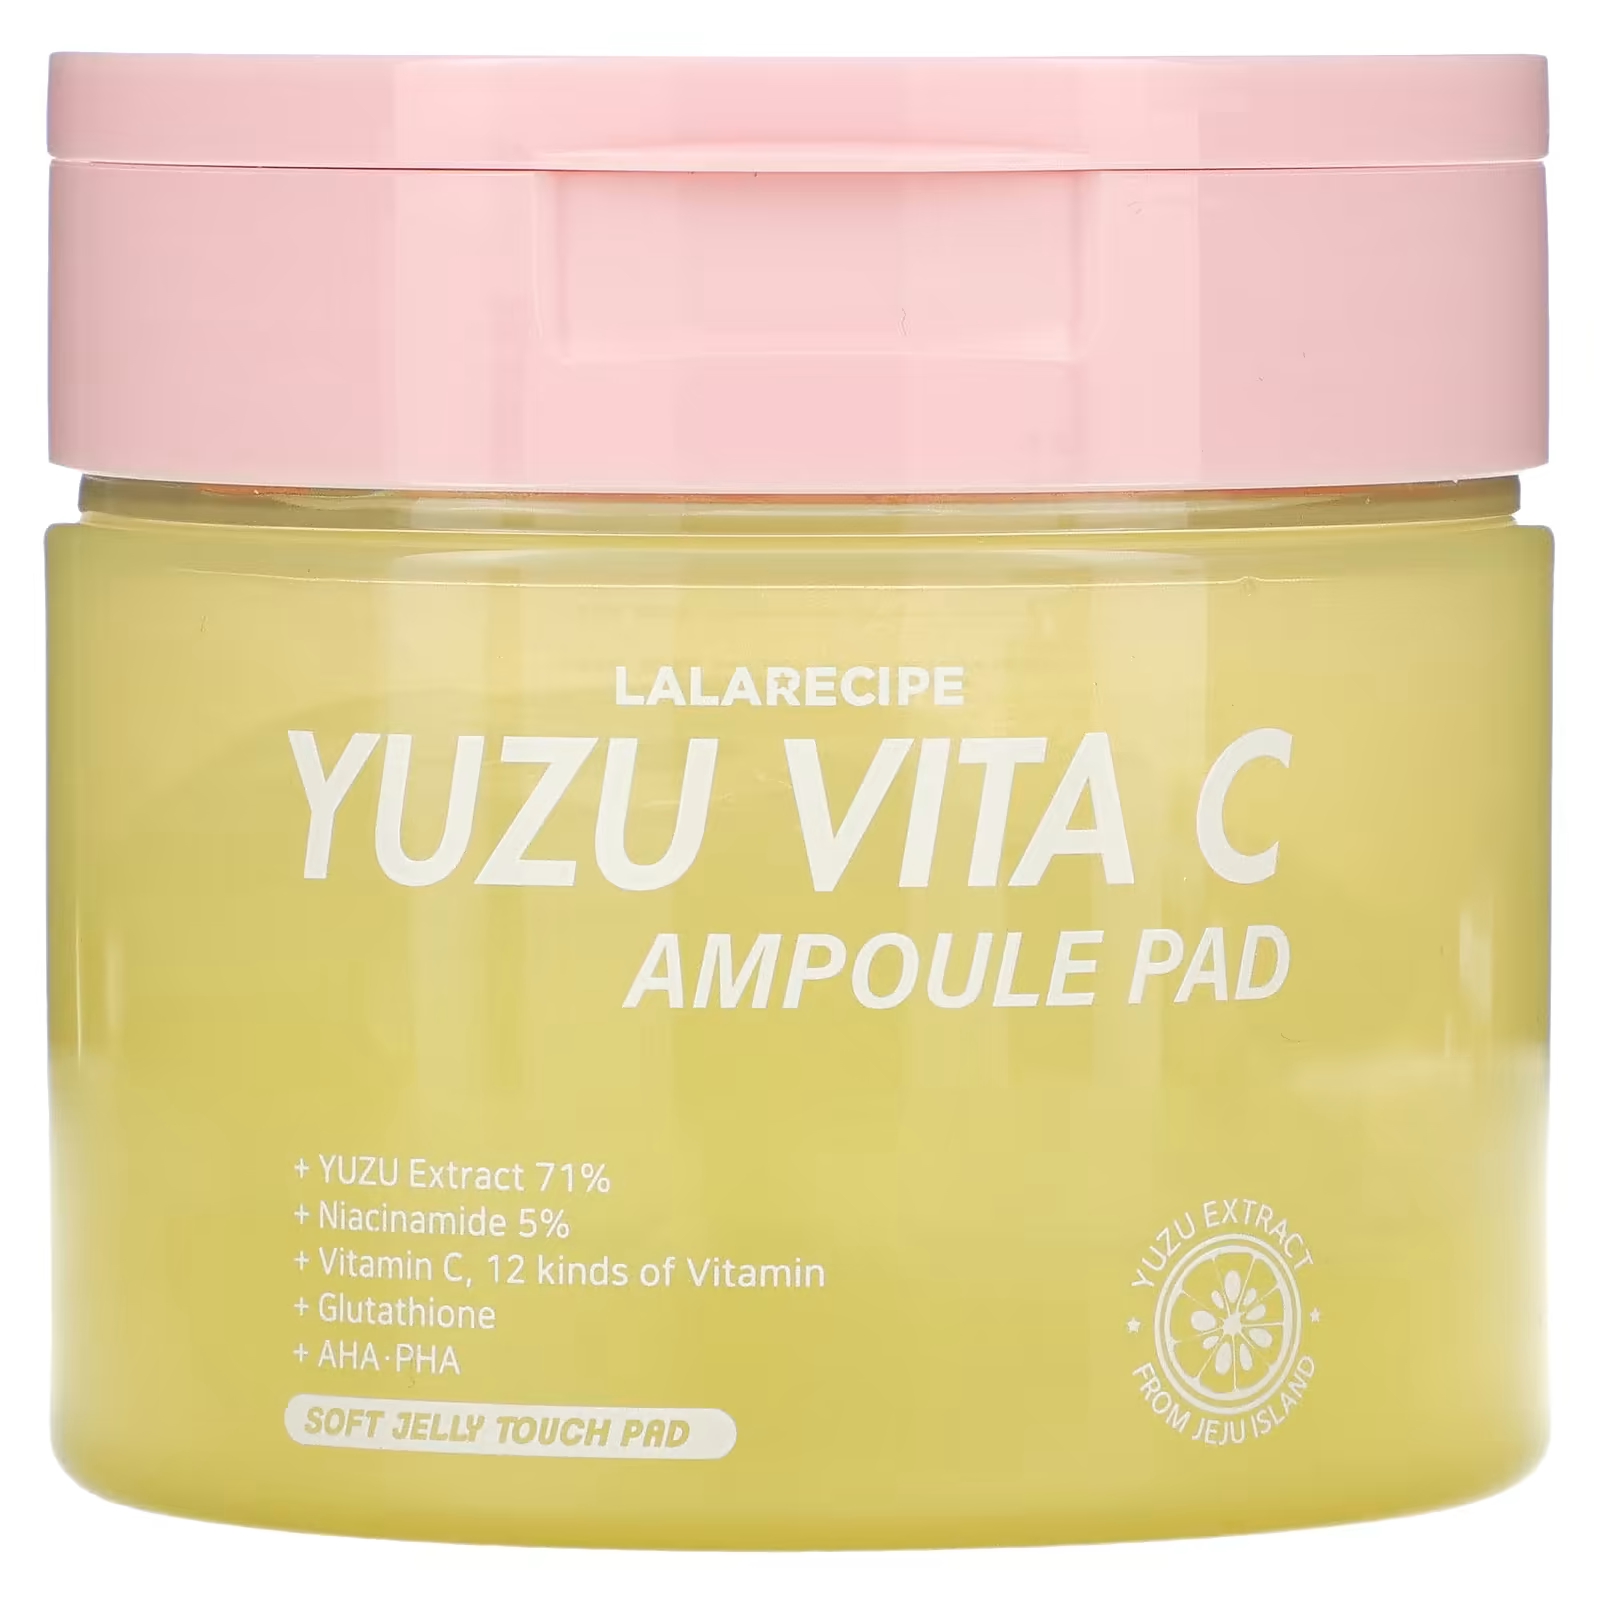 Маска Lalarecipe Yuzu Vita C Ampoule Pad осветляющая, 150 мл крем для лица lalarecipe yuzu vita c cream 50 мл